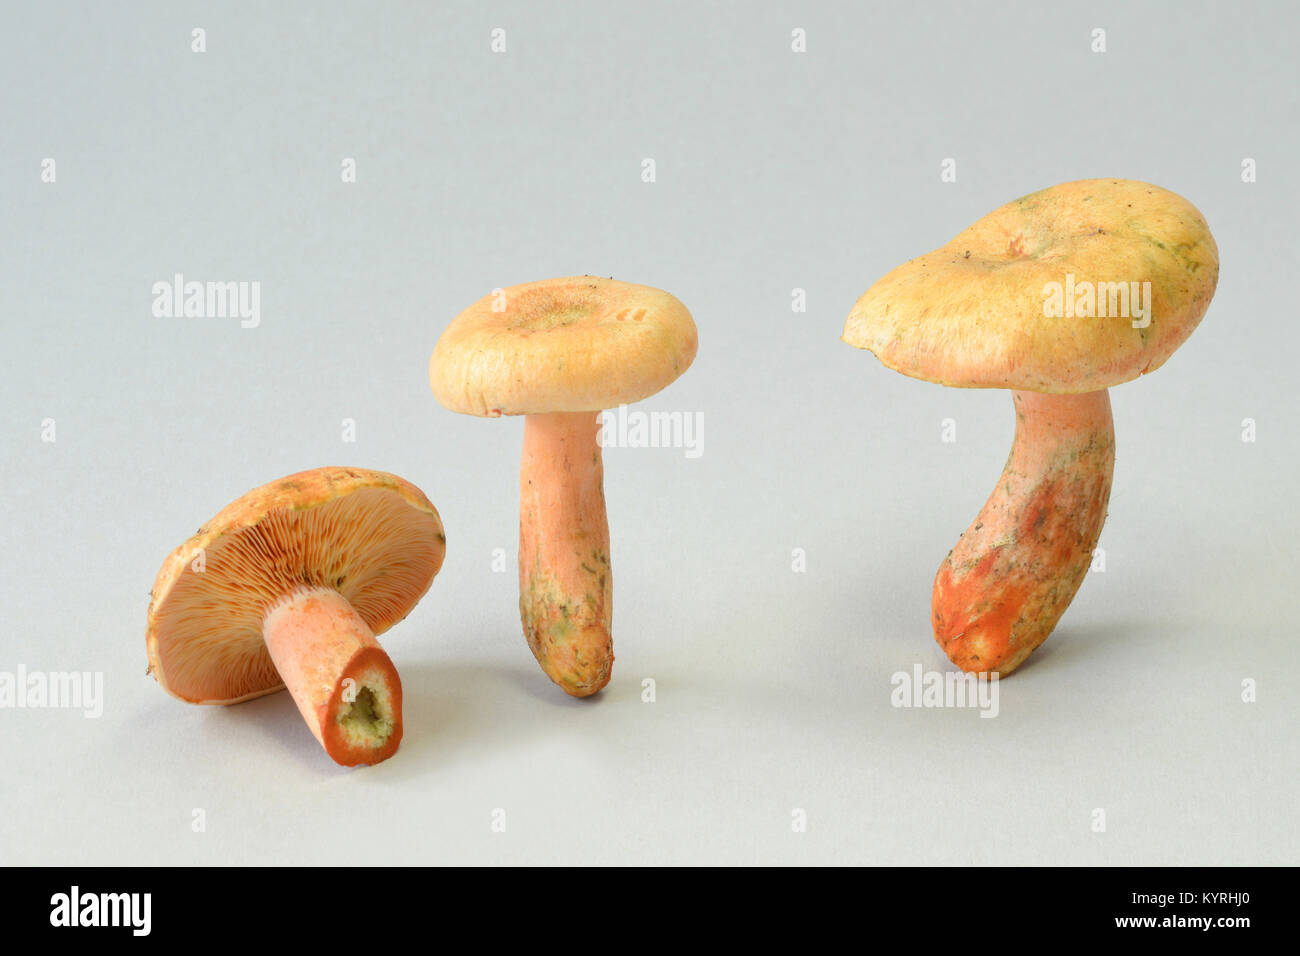 Falscher Safran Milkcap, orange Milkcap (Lactarius deterrimus), Pilze, studio Bild Stockfoto